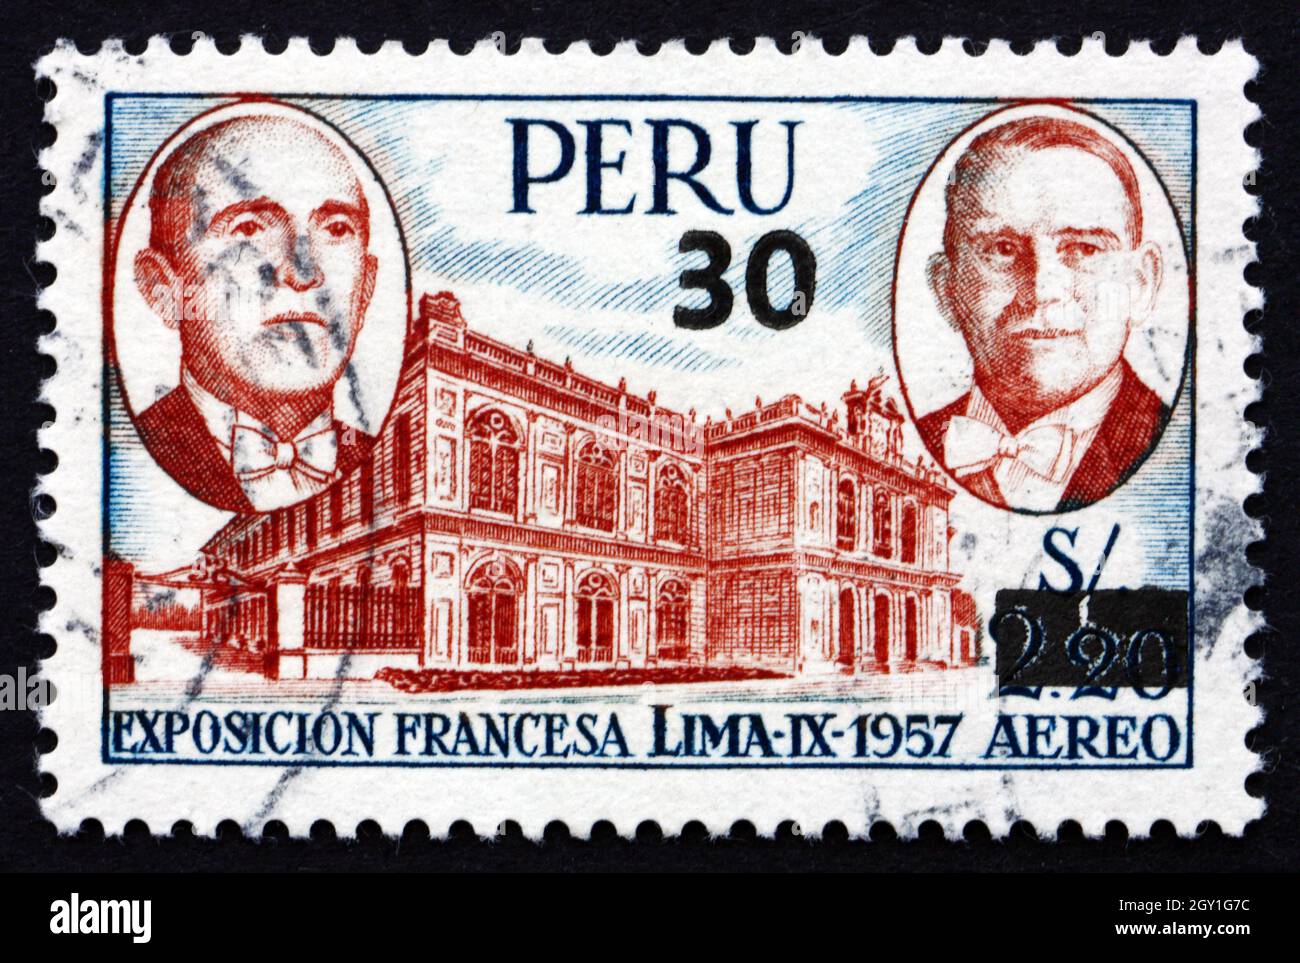 PERU - UM 1957: Eine in Peru gedruckte Briefmarke zeigt die Präsidenten Coty und Prado sowie die Ausstellungshalle, Französische Ausstellung, Lima, um 1957 Stockfoto